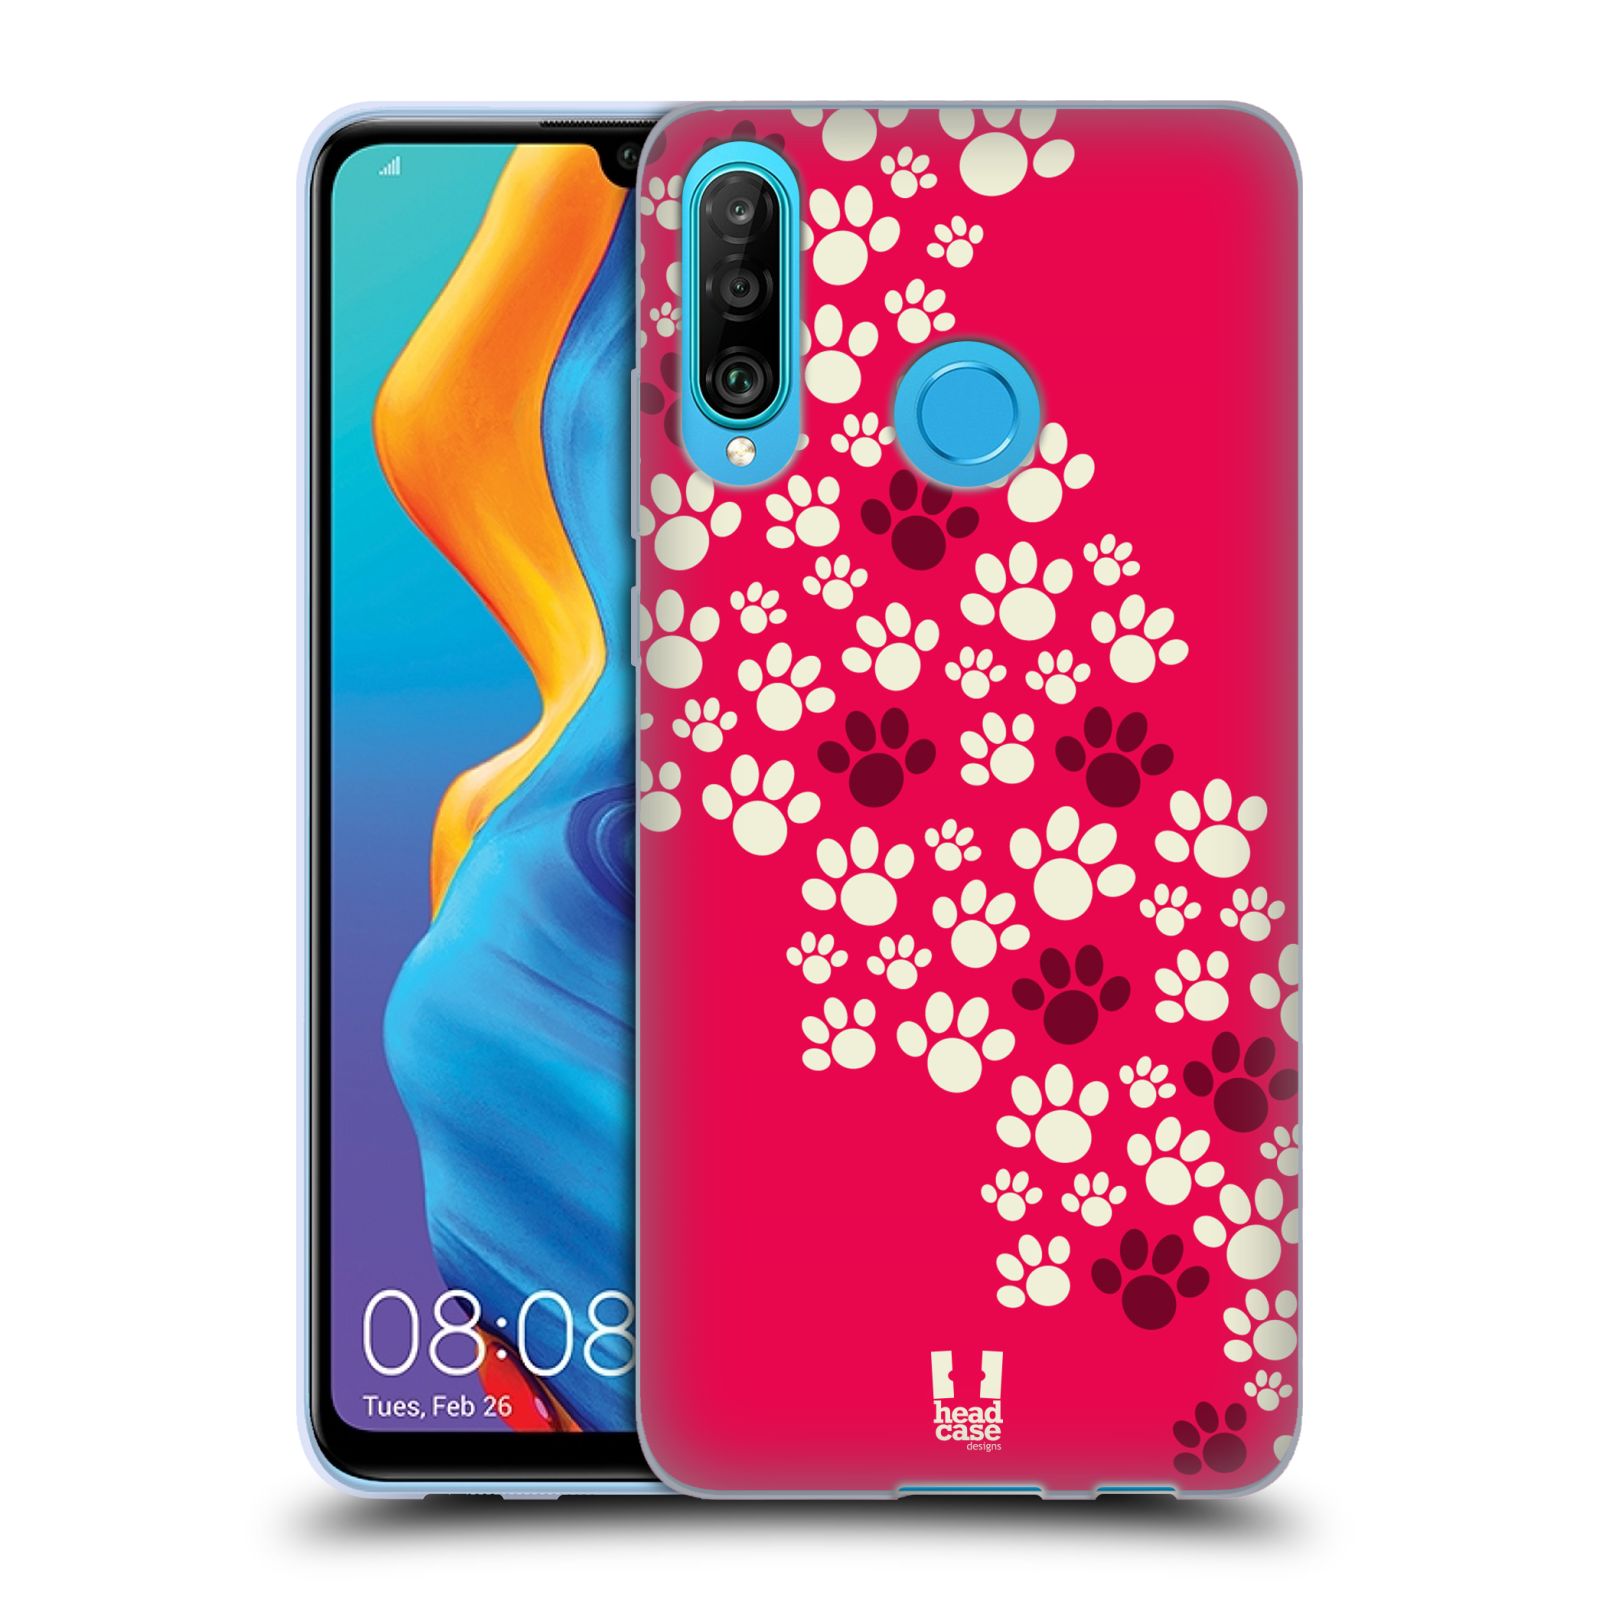 Silikonové pouzdro na mobil Huawei P30 Lite - Head Case - TLAPKY RŮŽOVÉ (Silikonový kryt, obal, pouzdro na mobilní telefon Huawei P30 Lite Dual Sim (MAR-L01A, MAR-L21A, MAR-LX1A) s motivem TLAPKY RŮŽOVÉ)